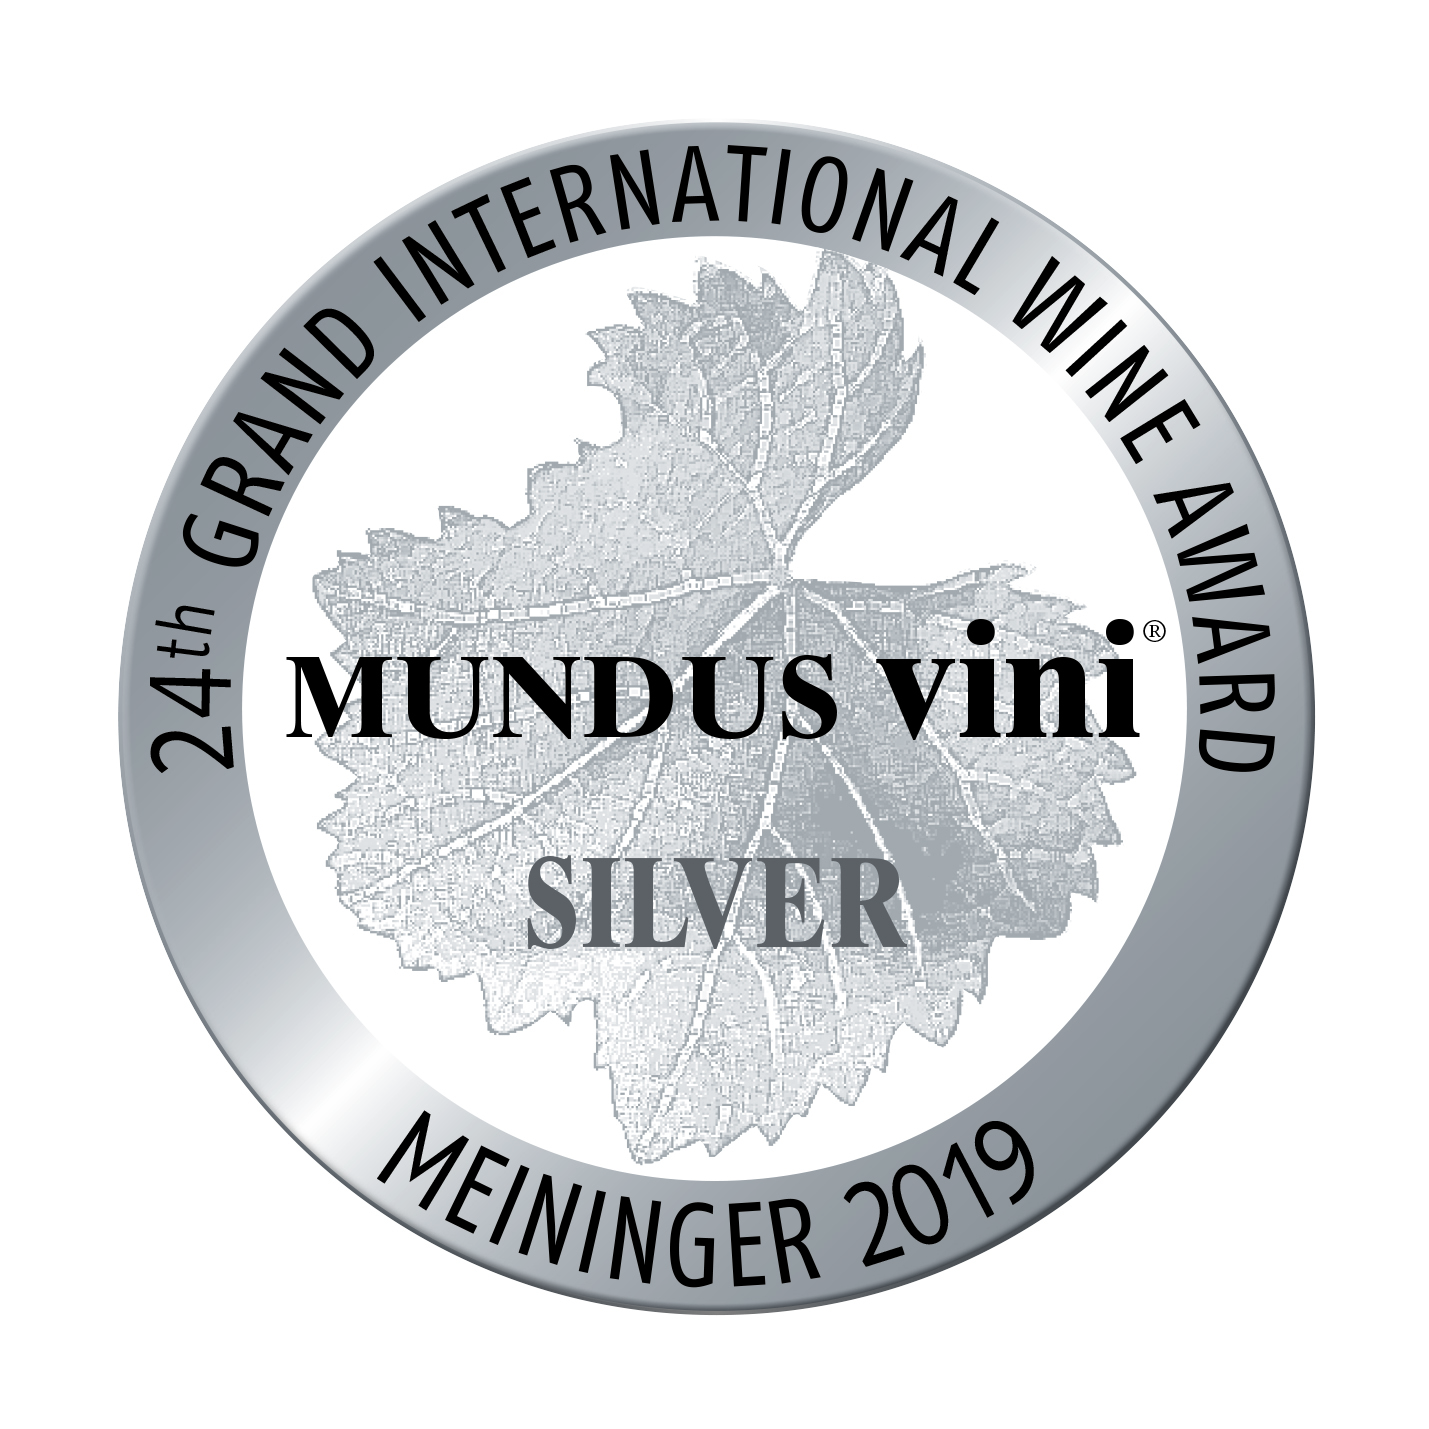 Mundus Vini 2019 - Tilaria 2015